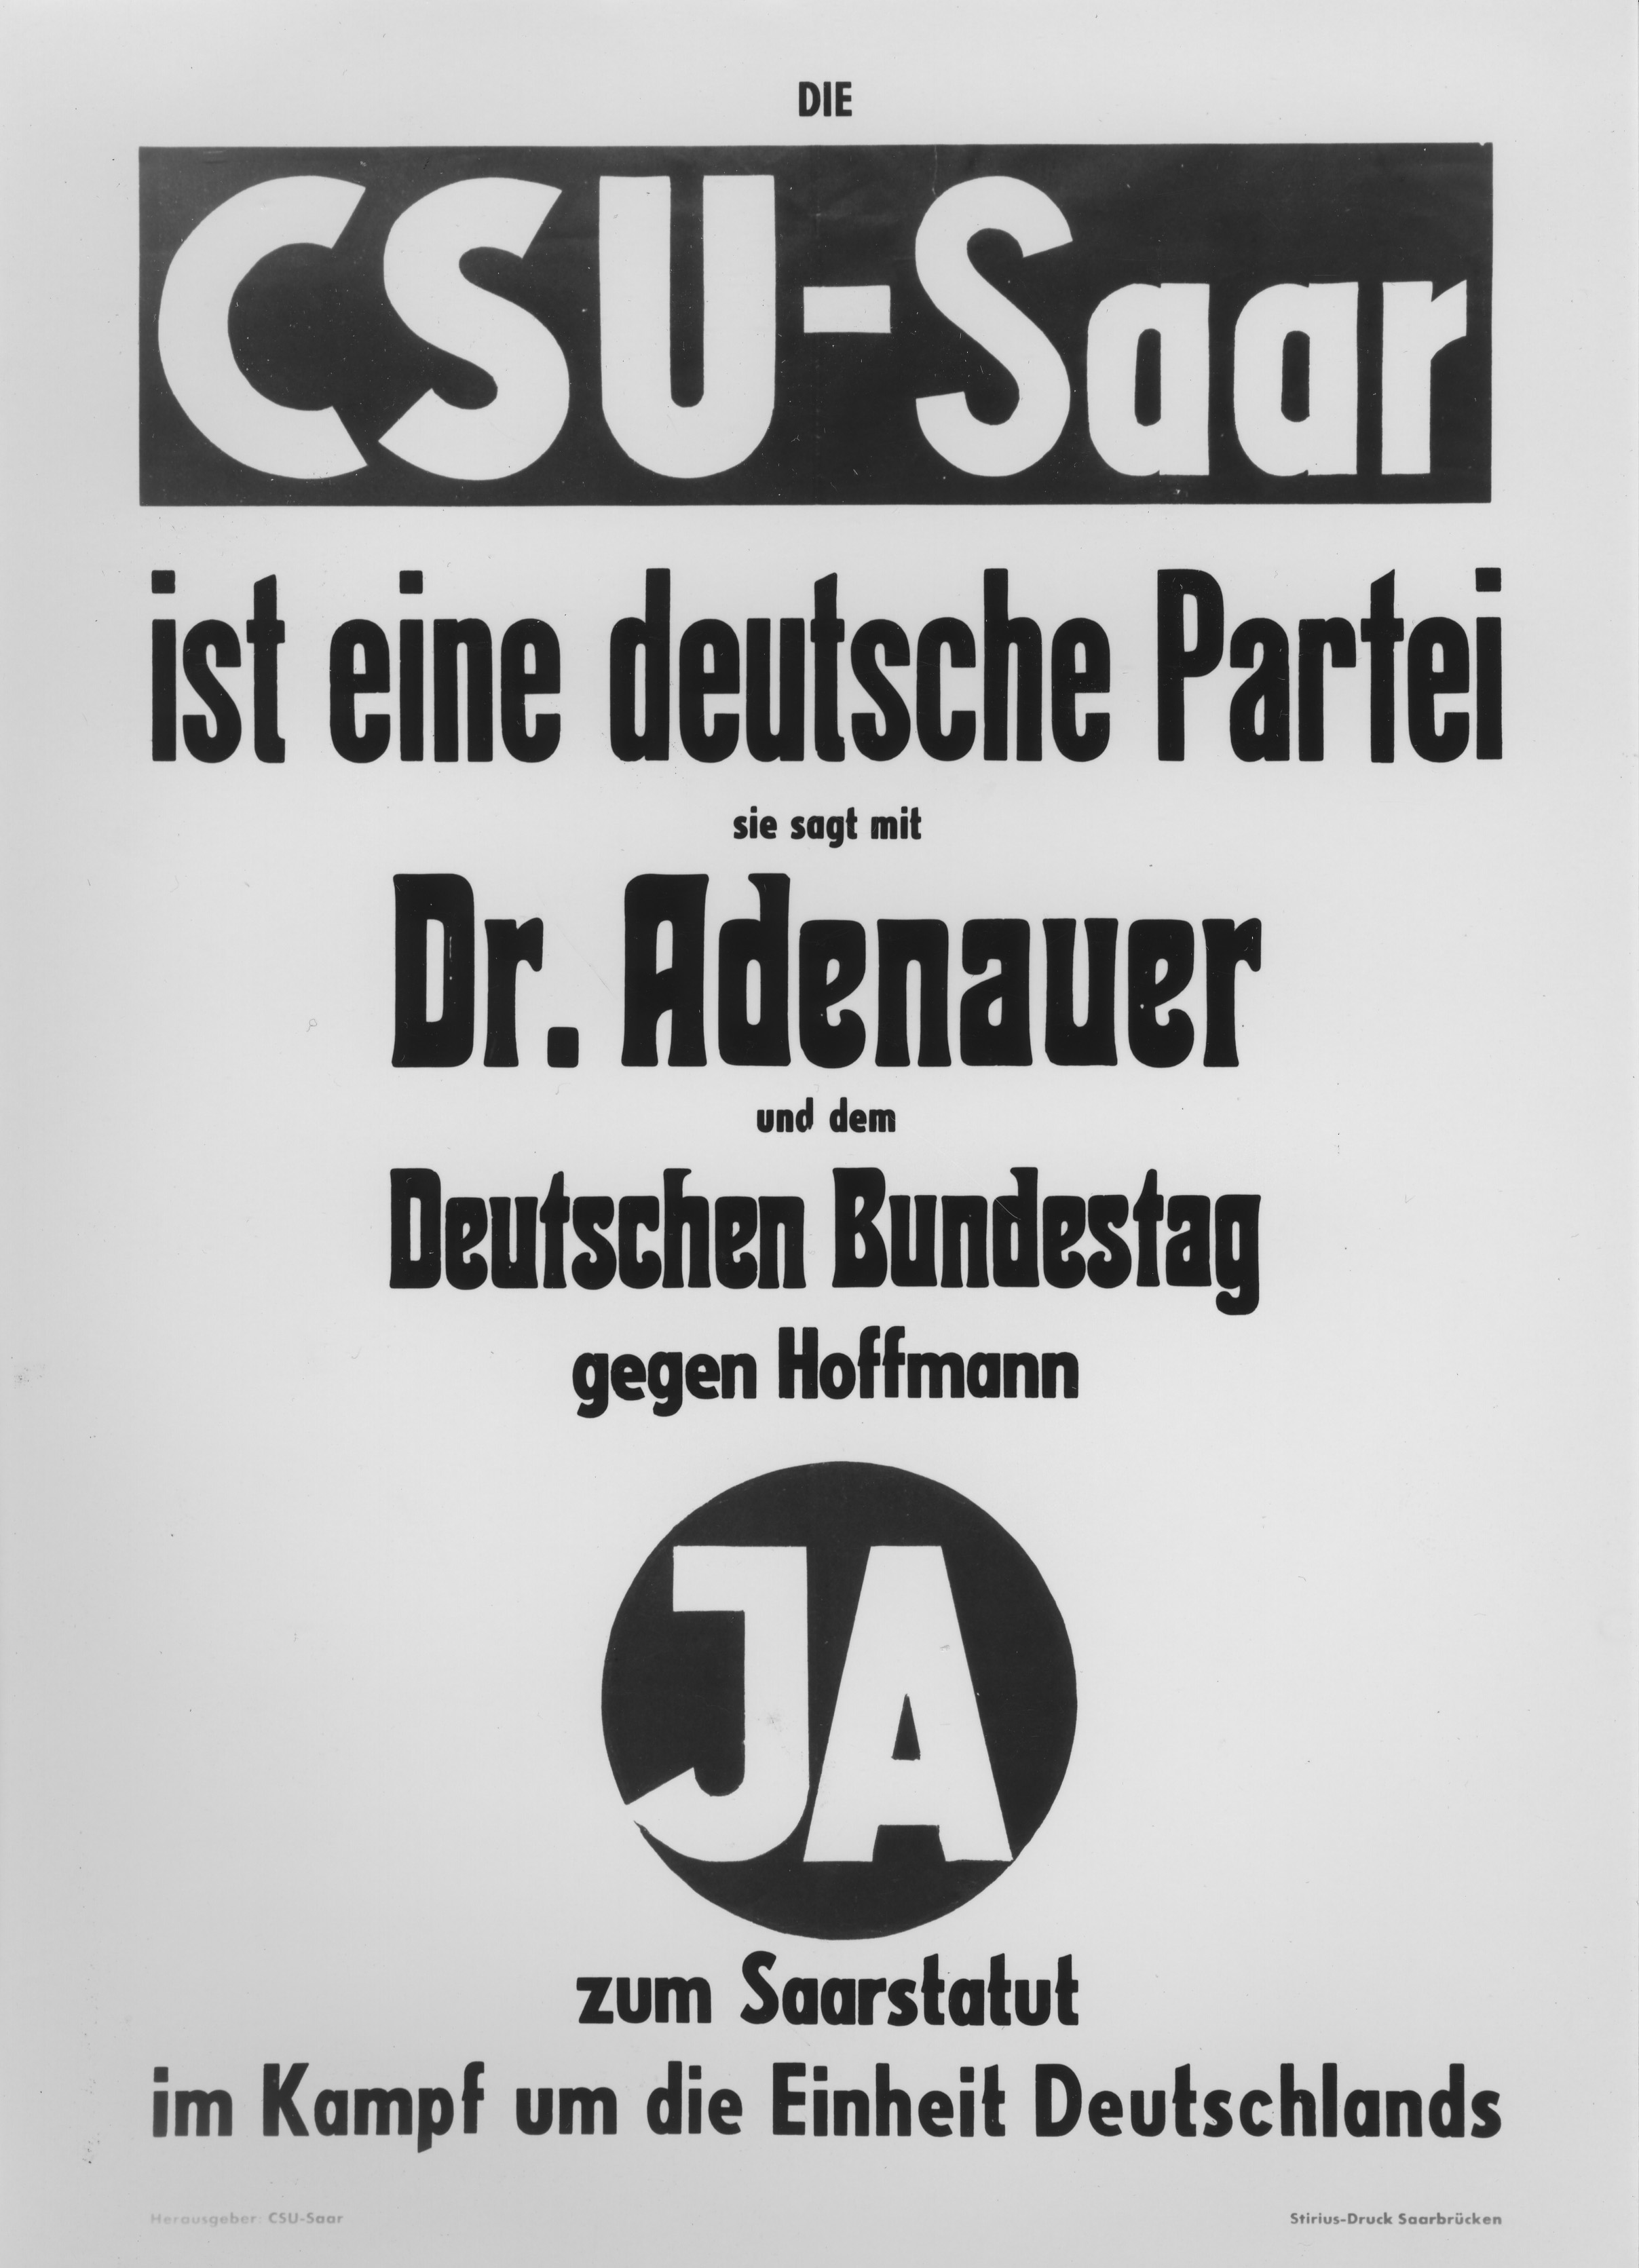 Wahlplakat der CSU-Saar